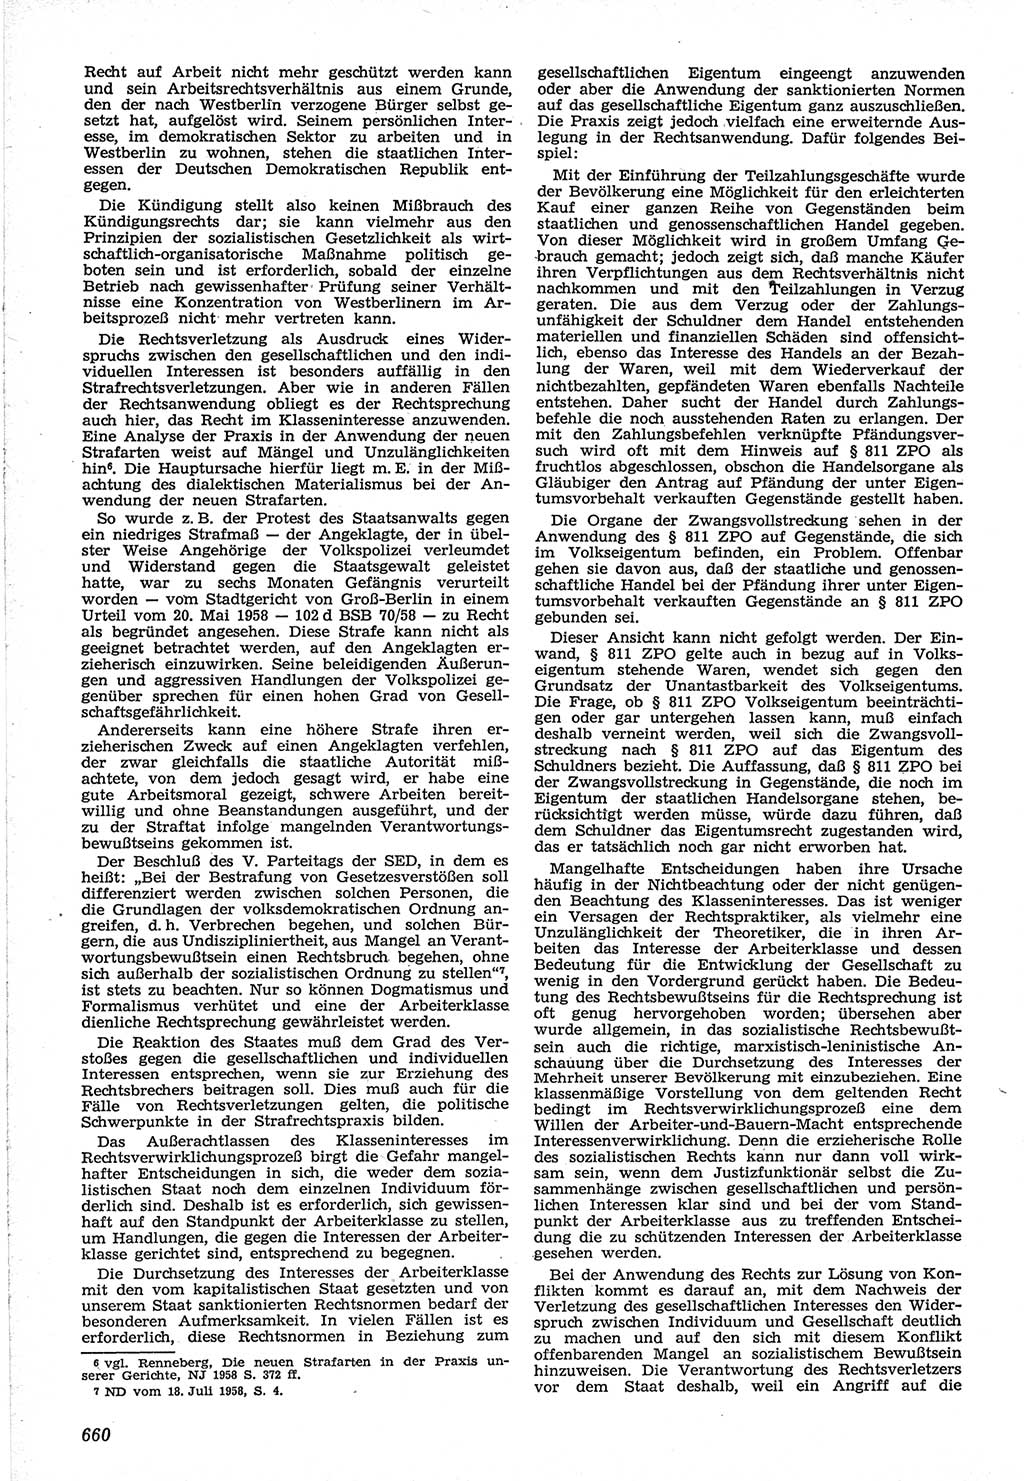 Neue Justiz (NJ), Zeitschrift für Recht und Rechtswissenschaft [Deutsche Demokratische Republik (DDR)], 12. Jahrgang 1958, Seite 660 (NJ DDR 1958, S. 660)